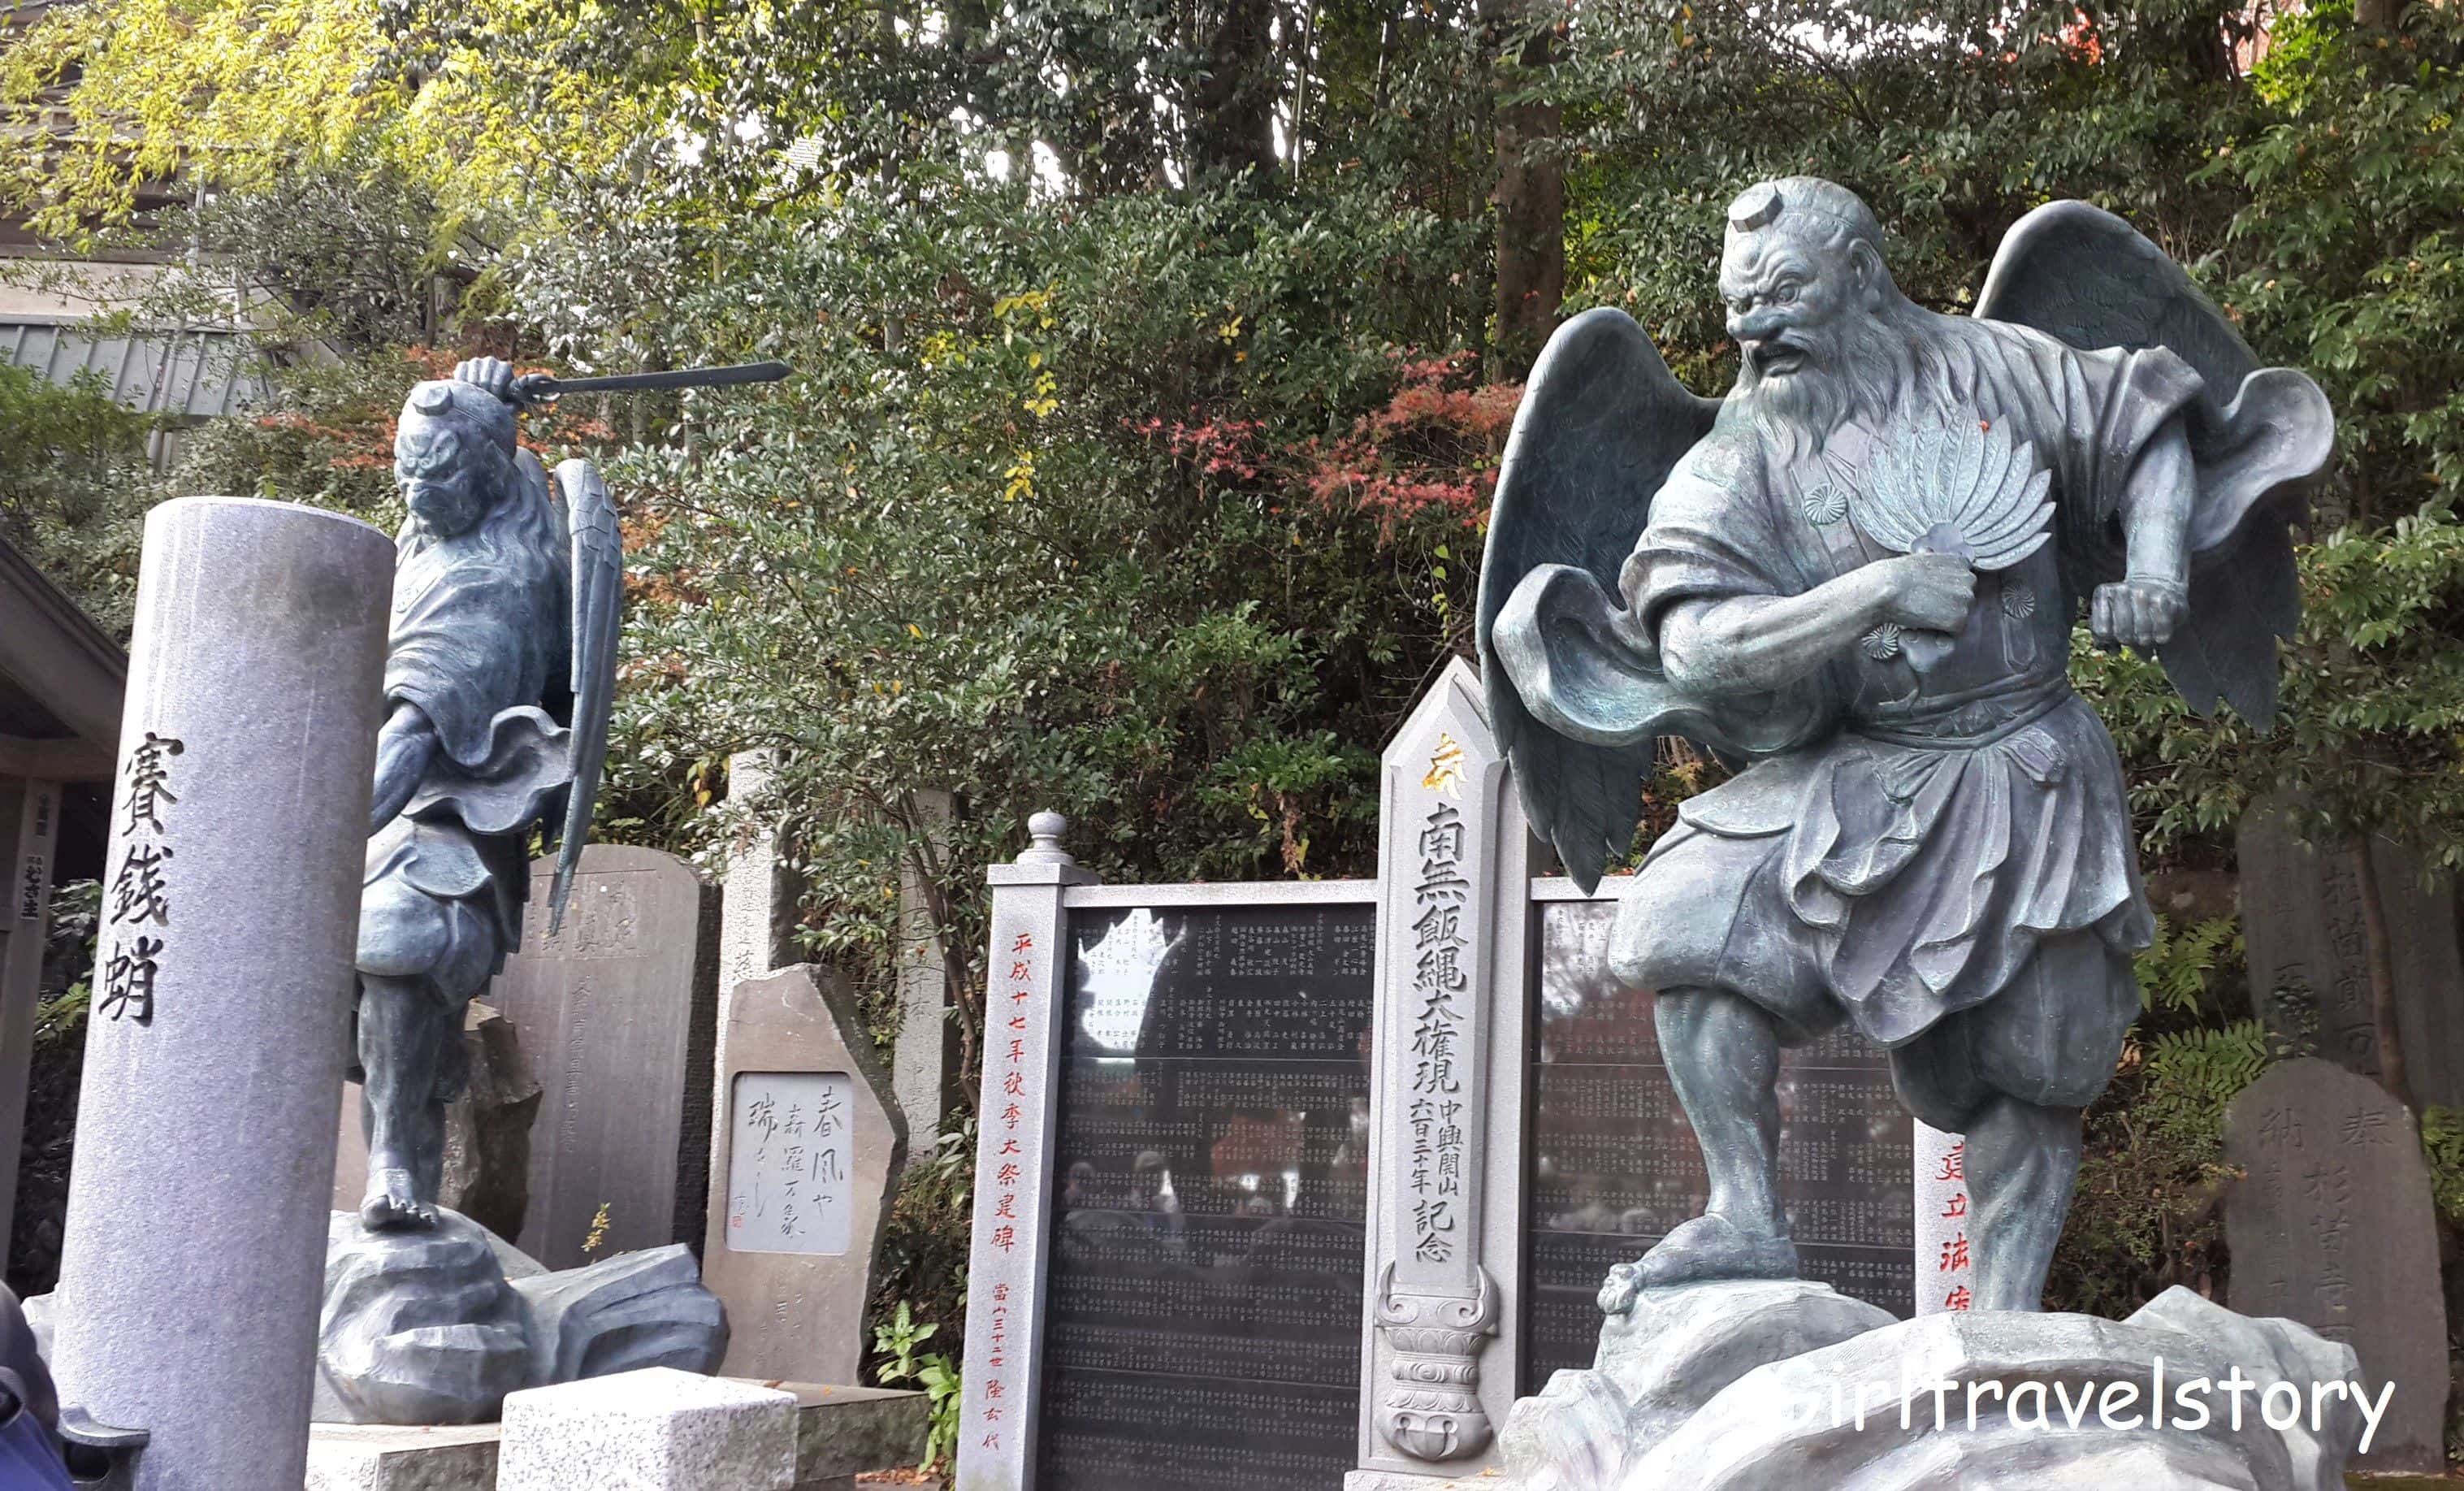 รูปปั้นเท็งกุ (Tengu) ซึ่งเป็นเทพอสุรกายที่เป็นที่รู้จักกันดีในตำนานของญี่ปุ่น มีใบหน้าแดงและจมูกโด่งแหลม  